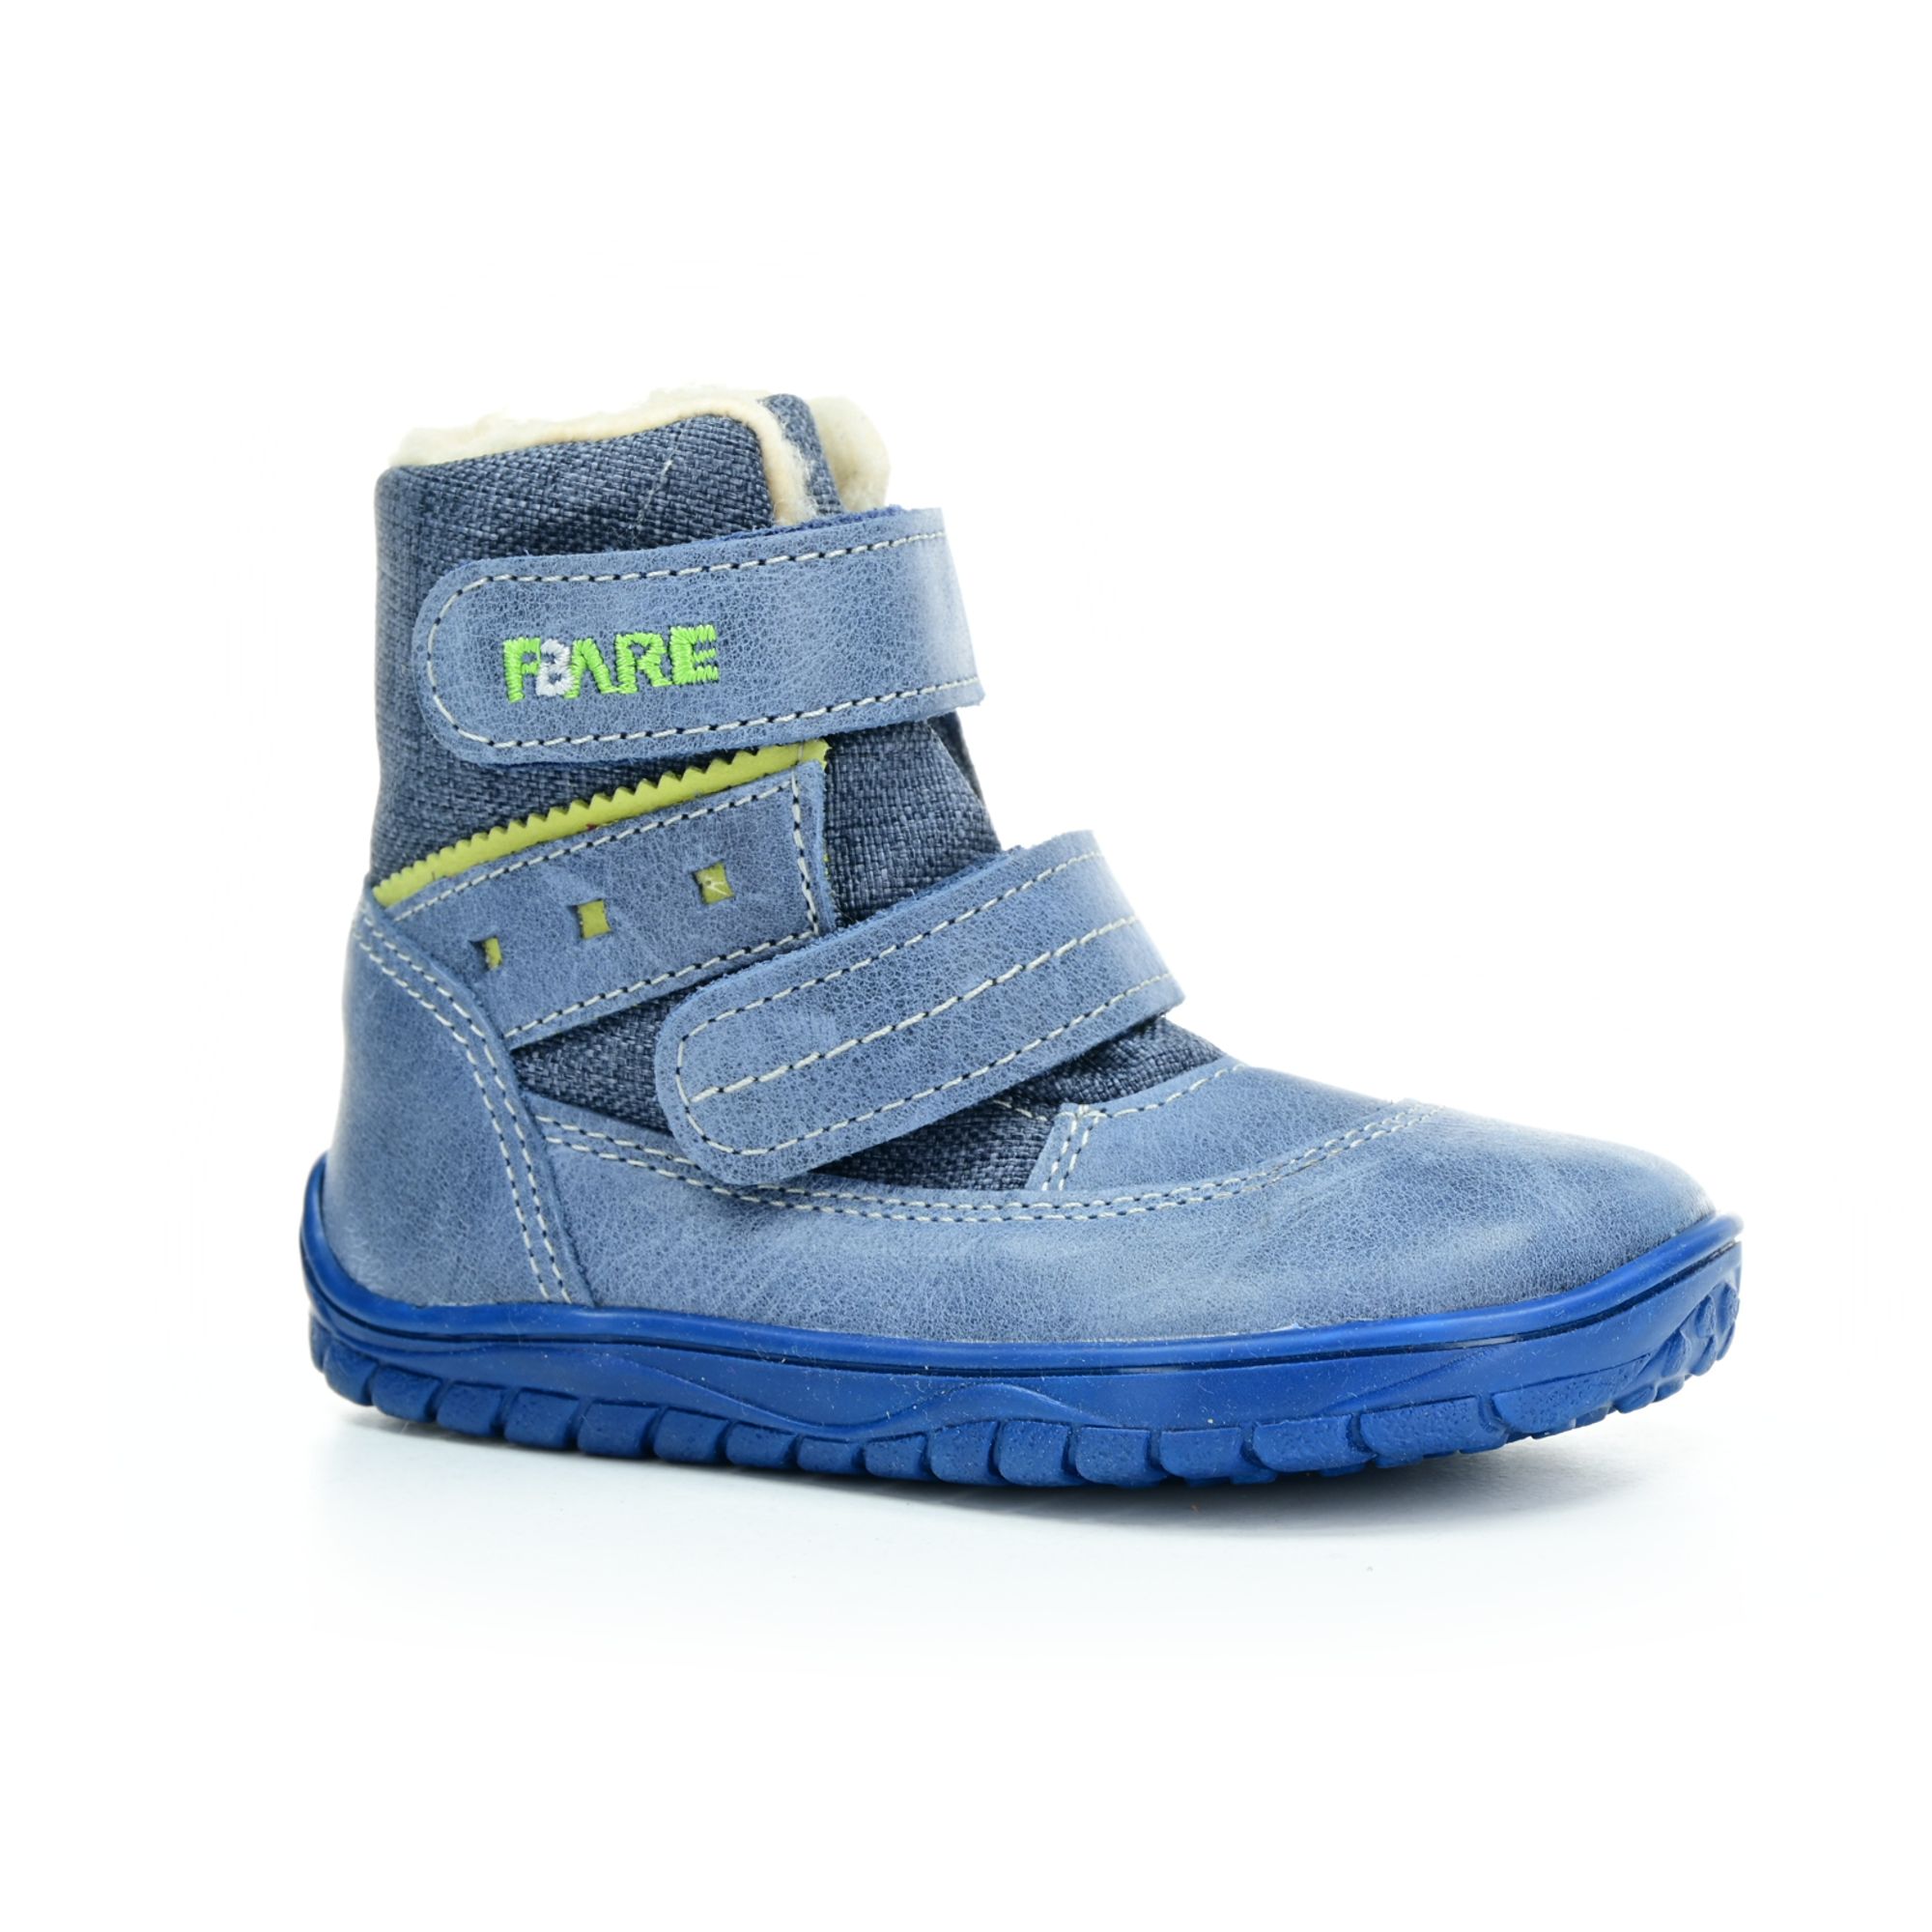 Levně boty Fare B5441102 modré s membránou (bare)